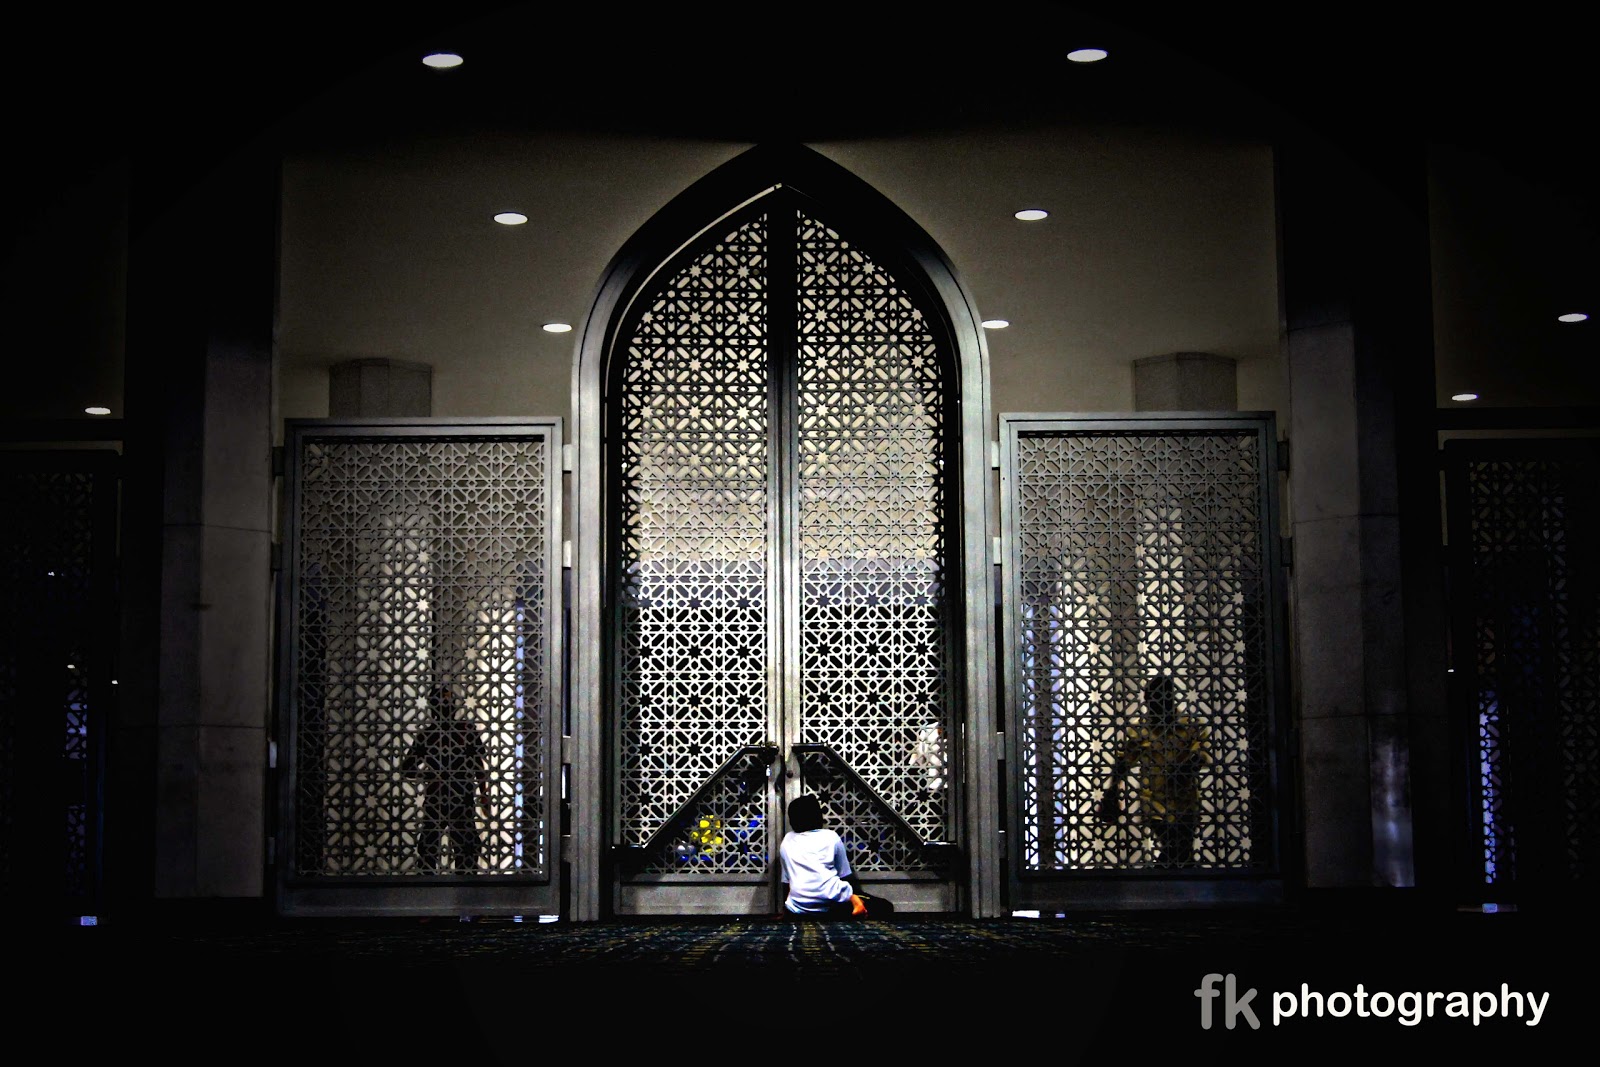 fkphotography: Masjid Sultan Salahuddin Abdul Aziz Shah ...